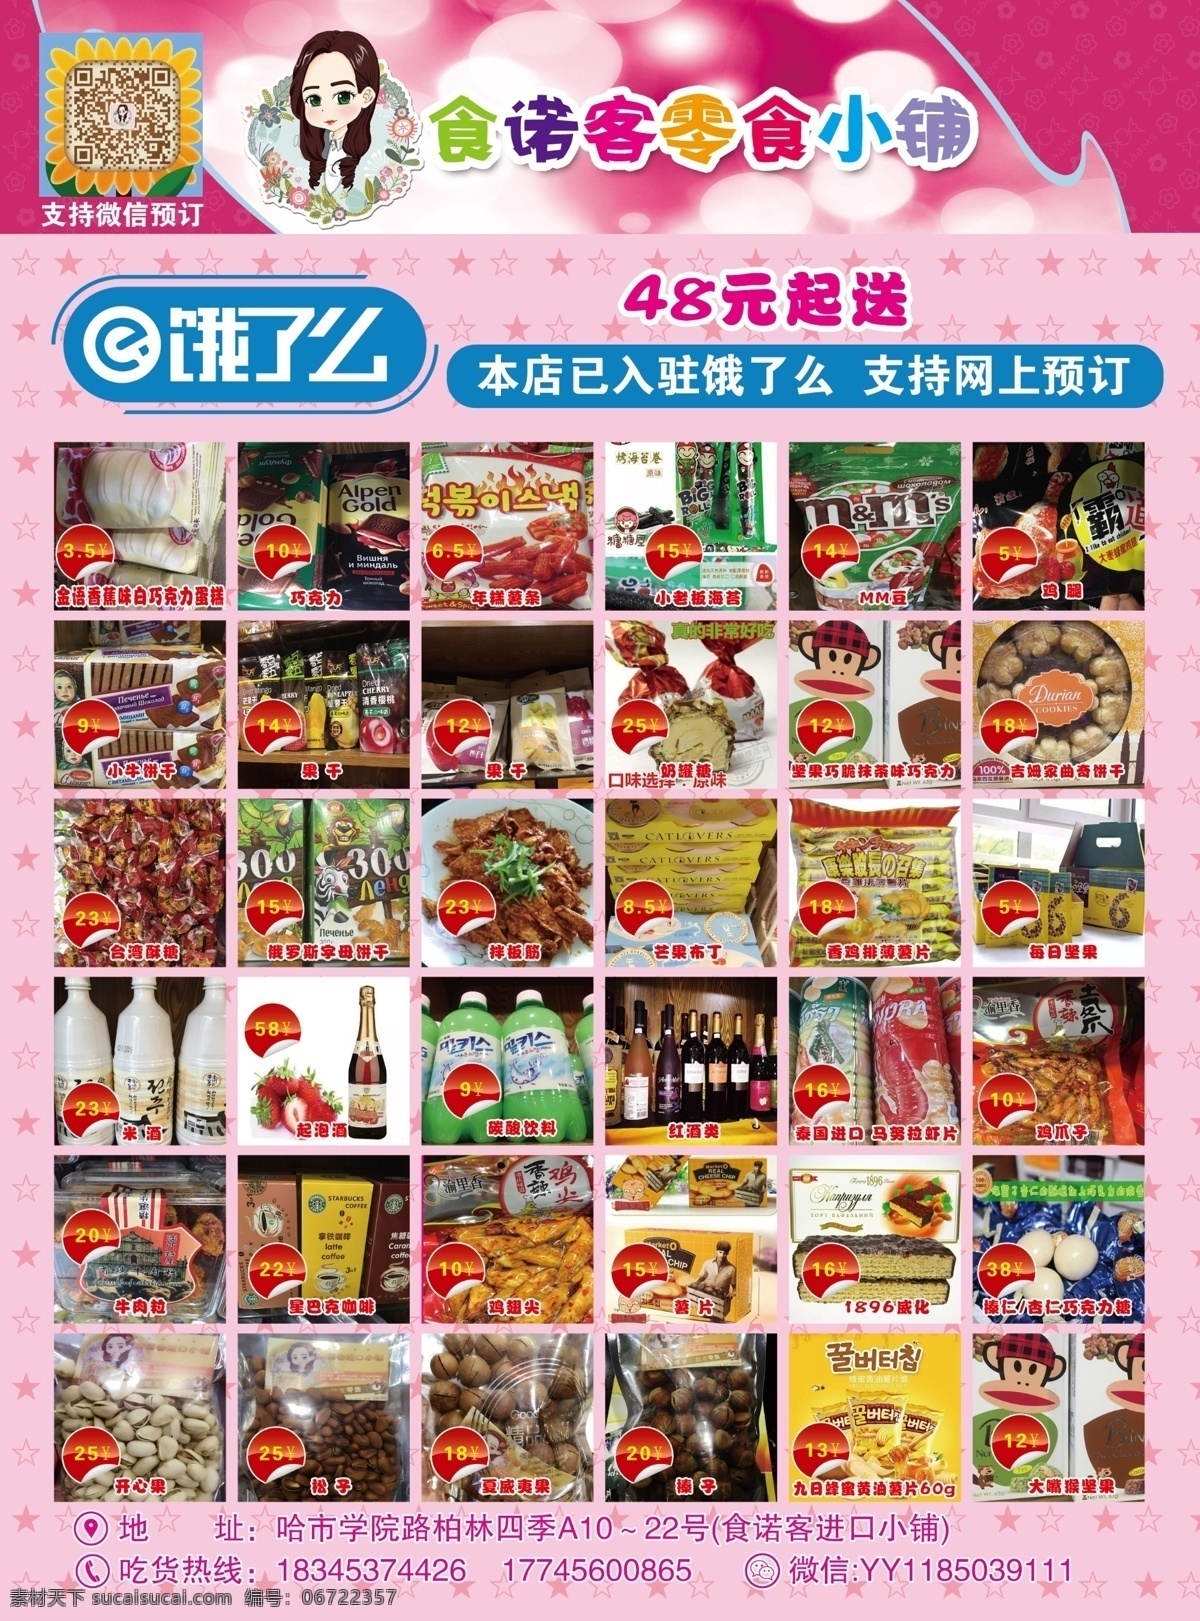 宣传单设计 零食店宣传单 进口 零食 宣传单 大16开 粉色背景 分层素材 cmyk模式 白色